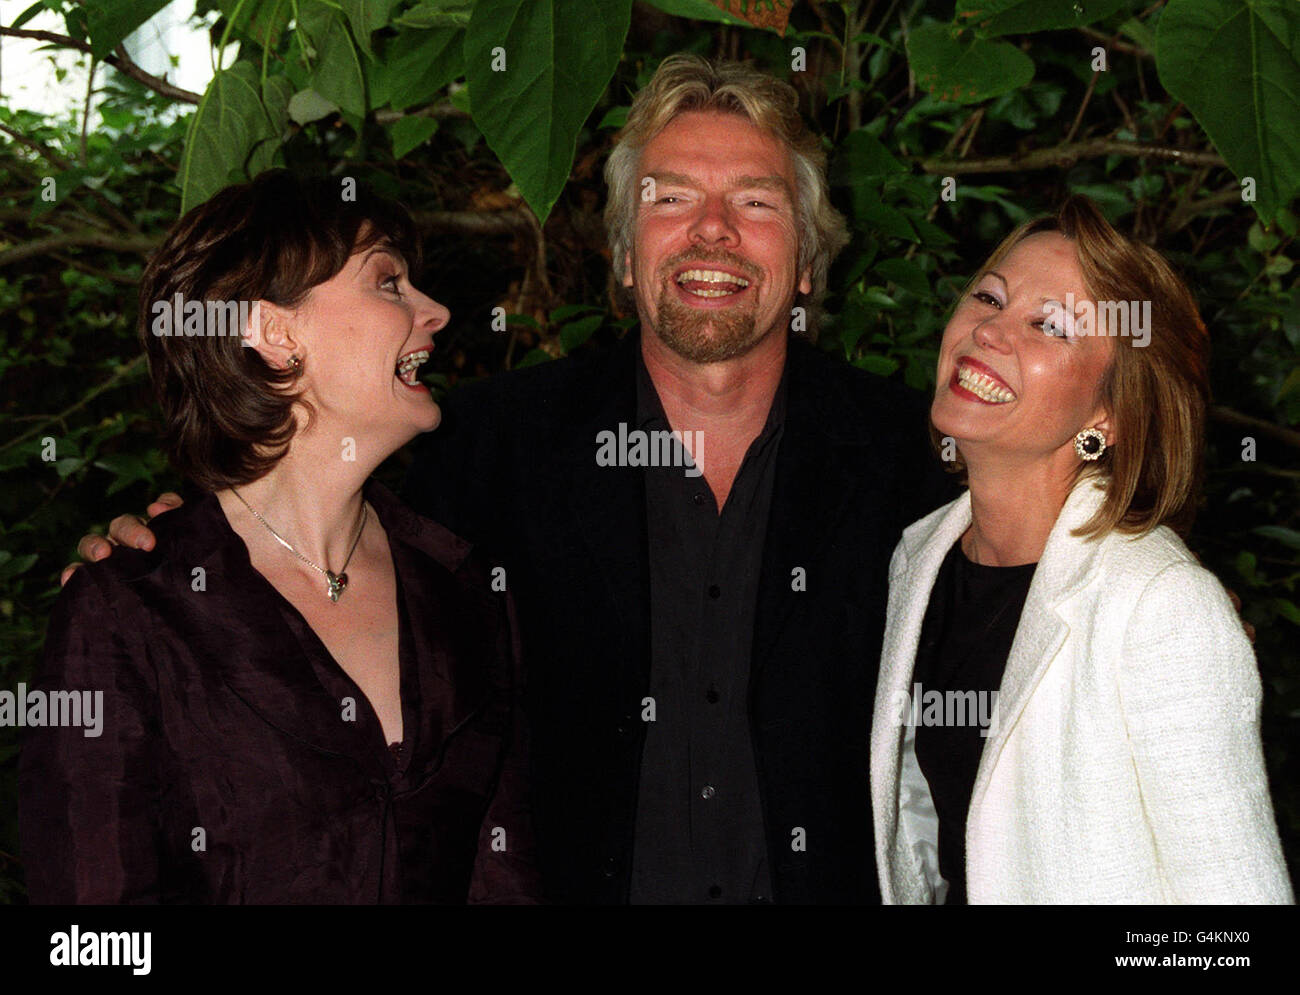 Branson/Booth/Meyer/Children Stock Photo